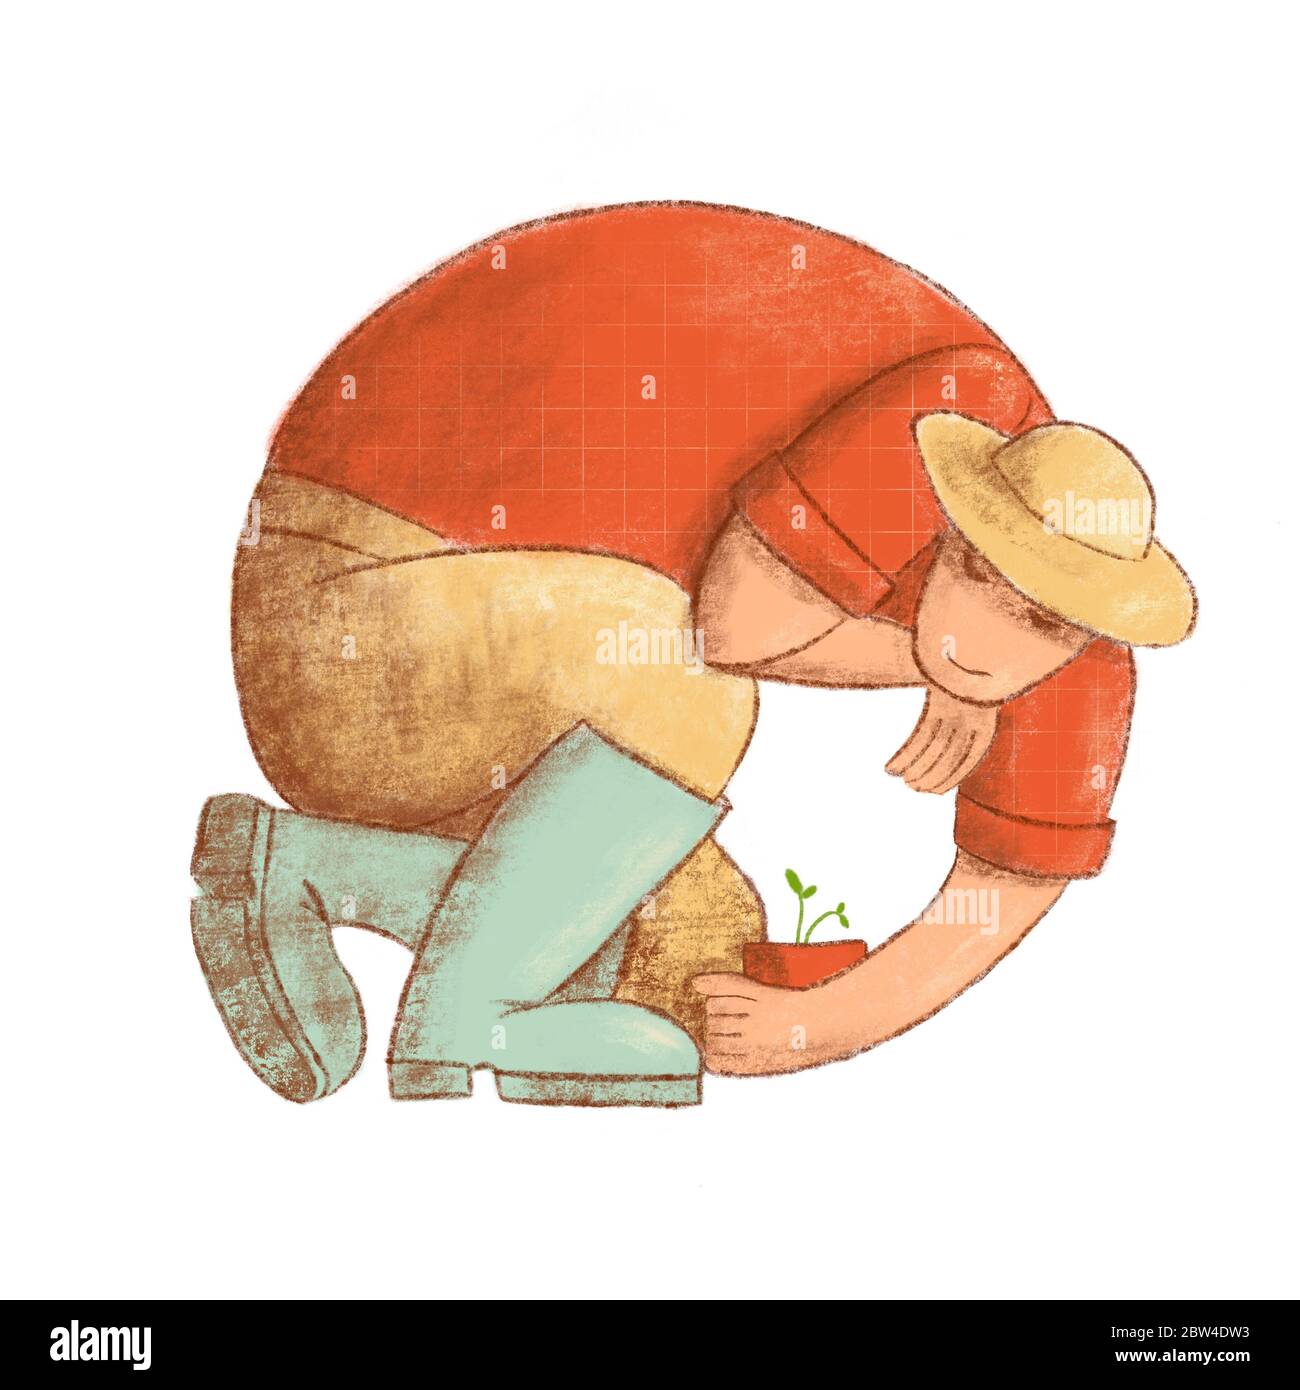 Vitruvianische Gärtner Illustration. Bauer im Kreis eingeschrieben. Mann in rotem Hemd, Strohhut und Regenstiefel Stockfoto